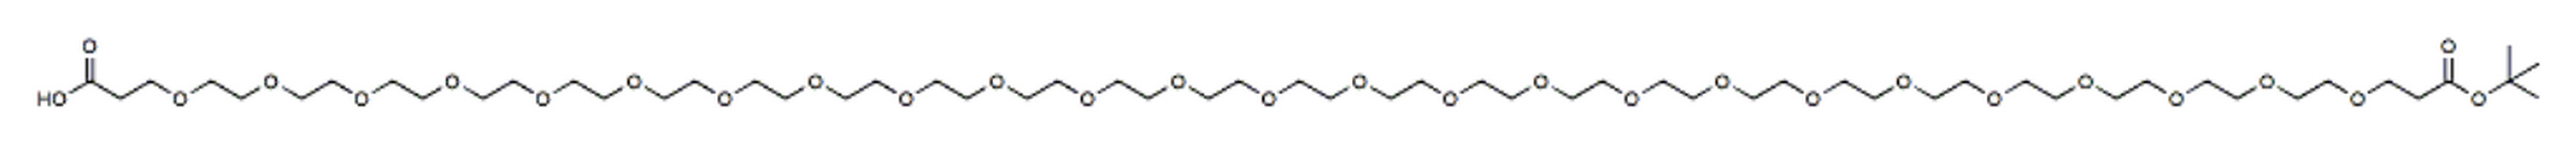 Acid-PEG25-t-butyl ester